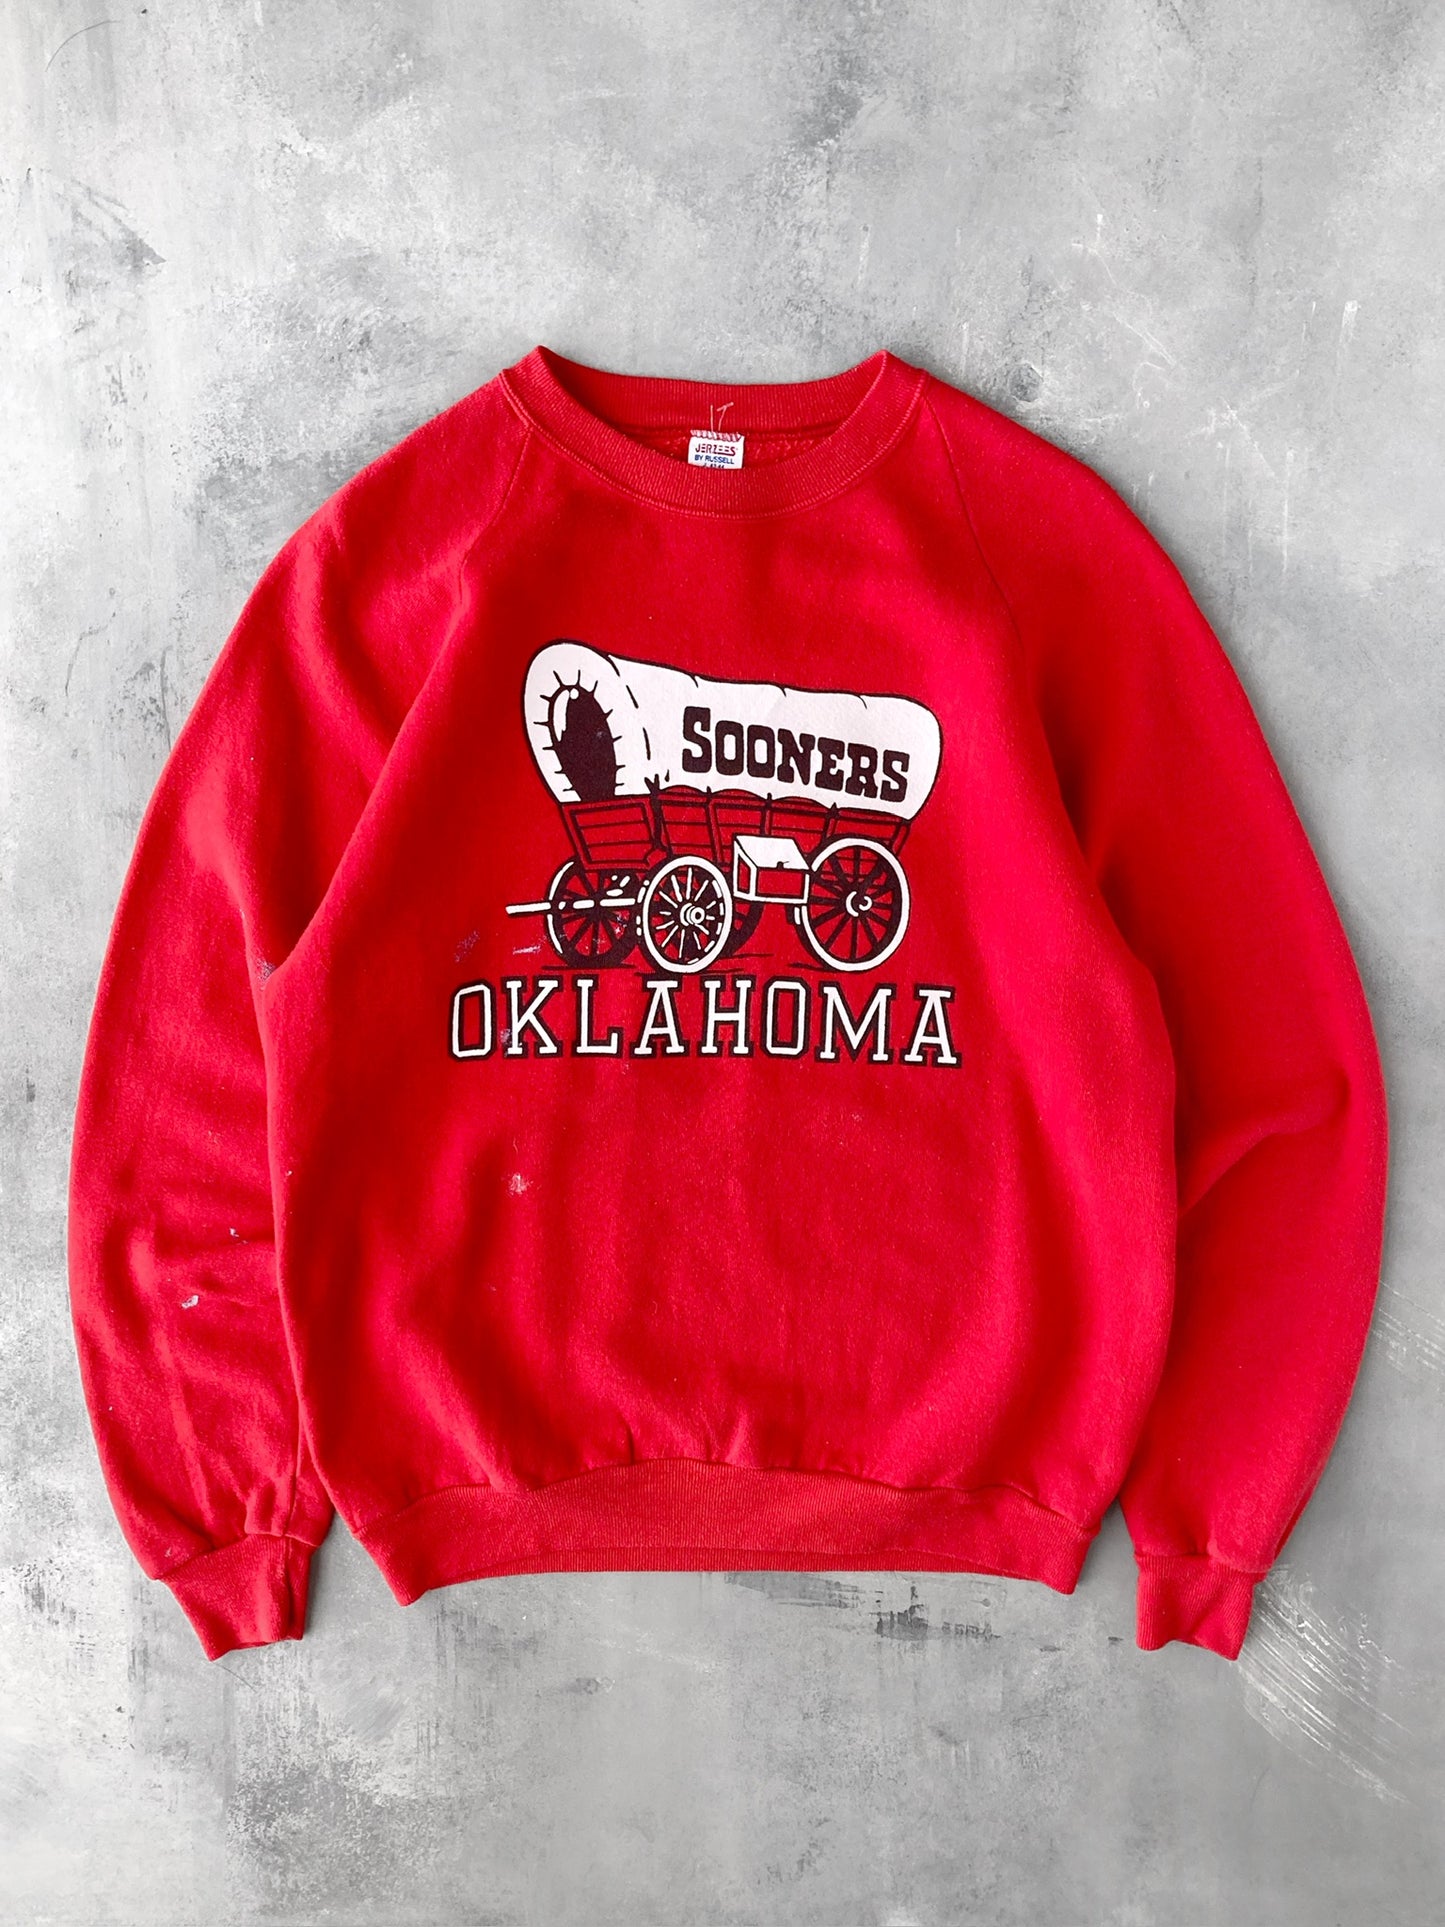 Oklahoma Sooners Sweatshirt 80's - Medium